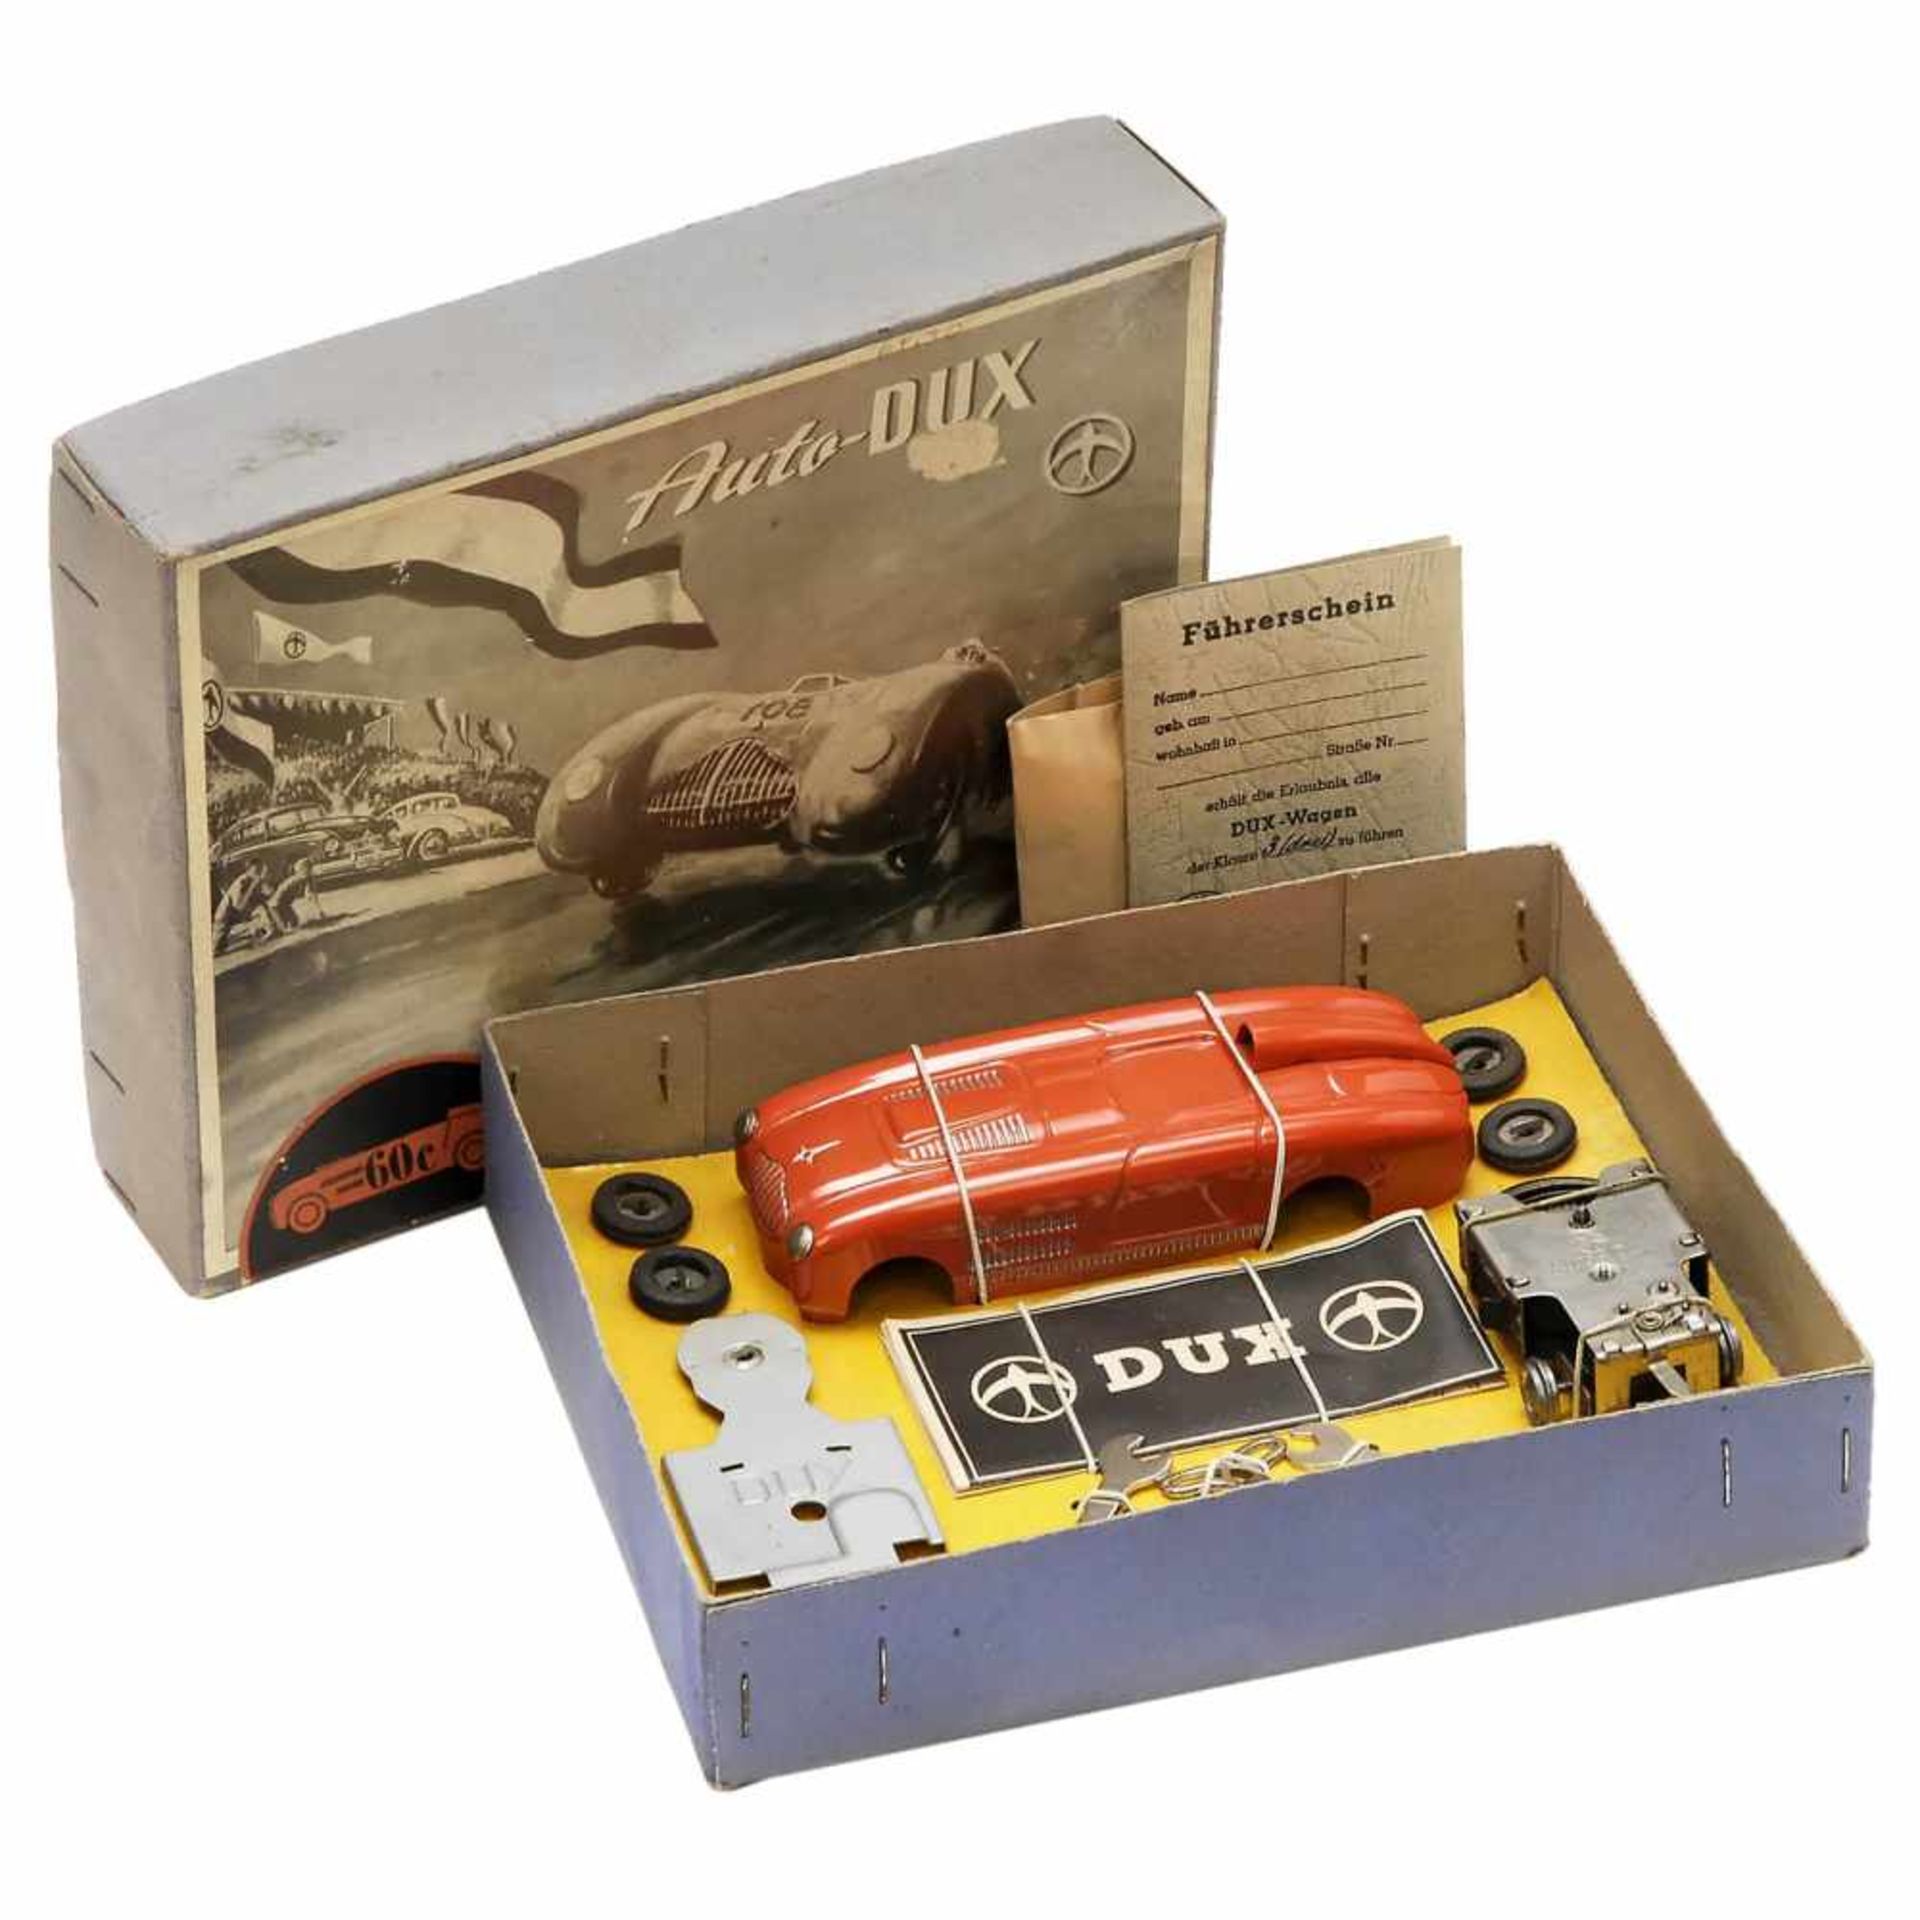 3 Auto-Dux Construction Kits, c. 1955-60Markes & Co. KG, Lüdenscheid, Germany. Complete sets in - Bild 2 aus 3